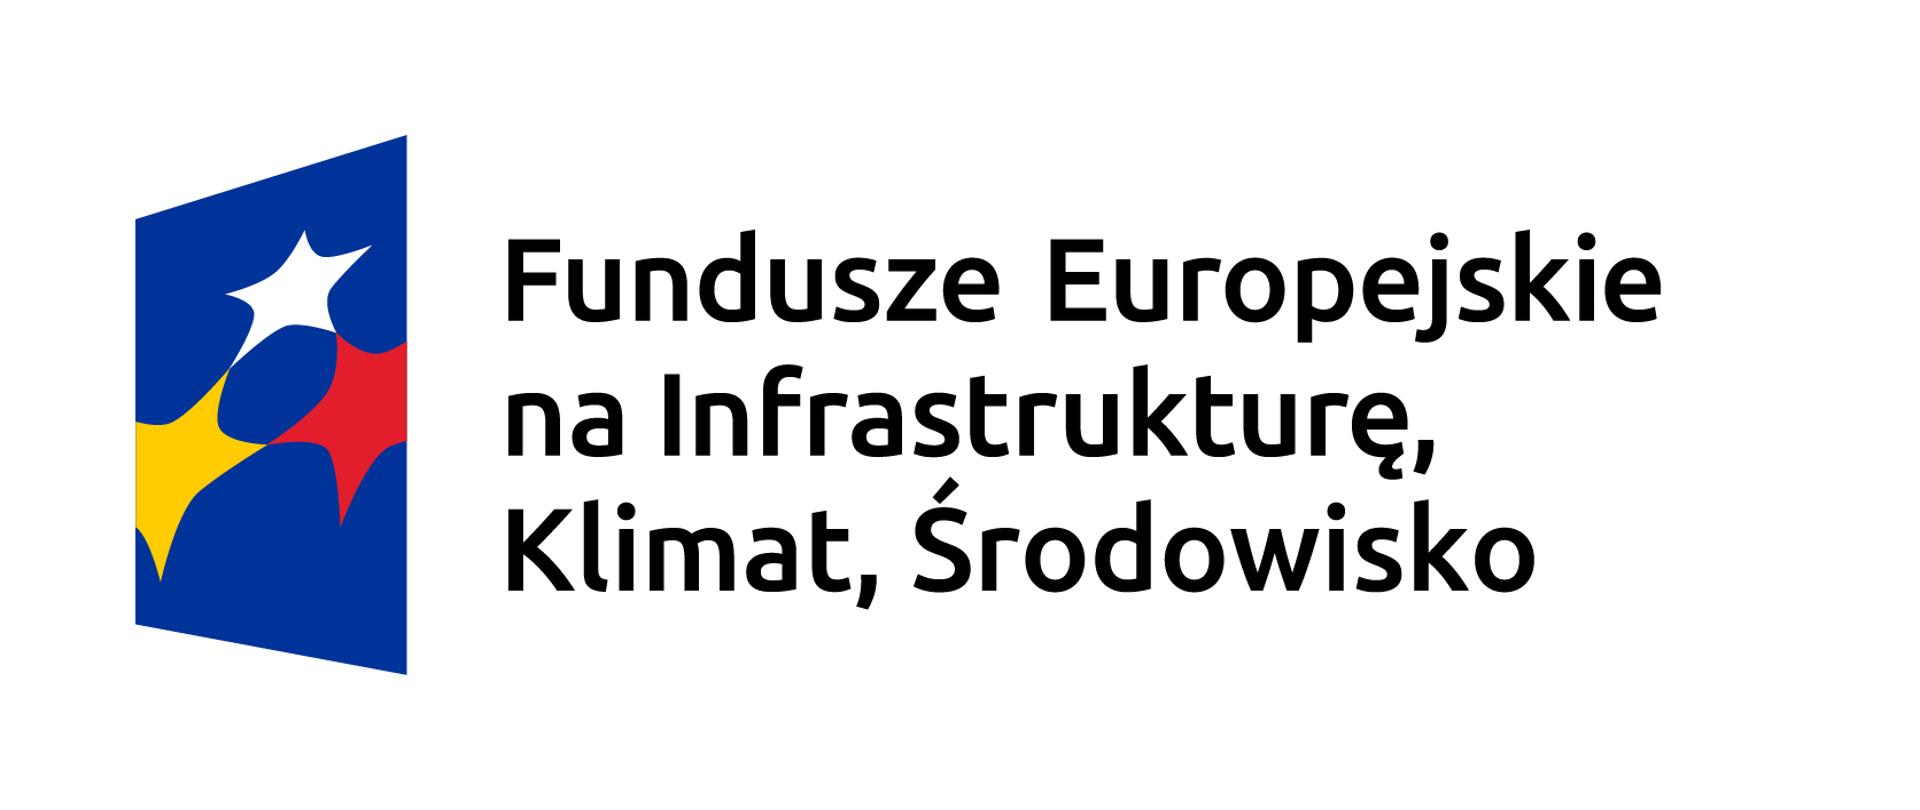 Zdjęcie lagi Funduszu, Polski i Unii Europejskiej